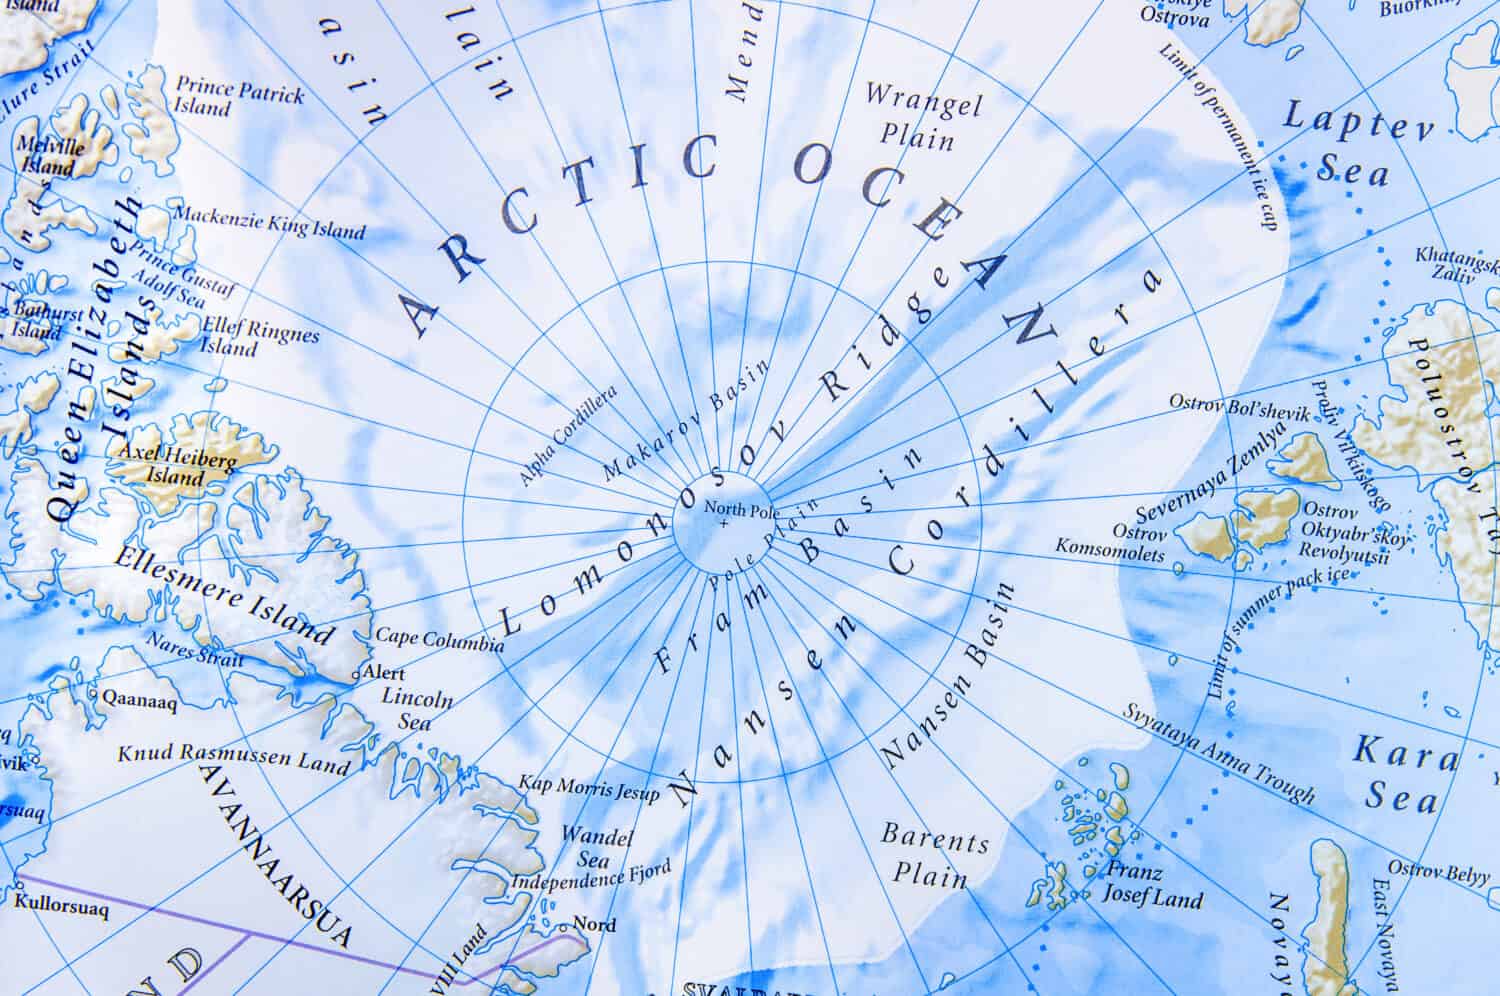 Mappa geografica della posizione vicina dell'Oceano Artico 